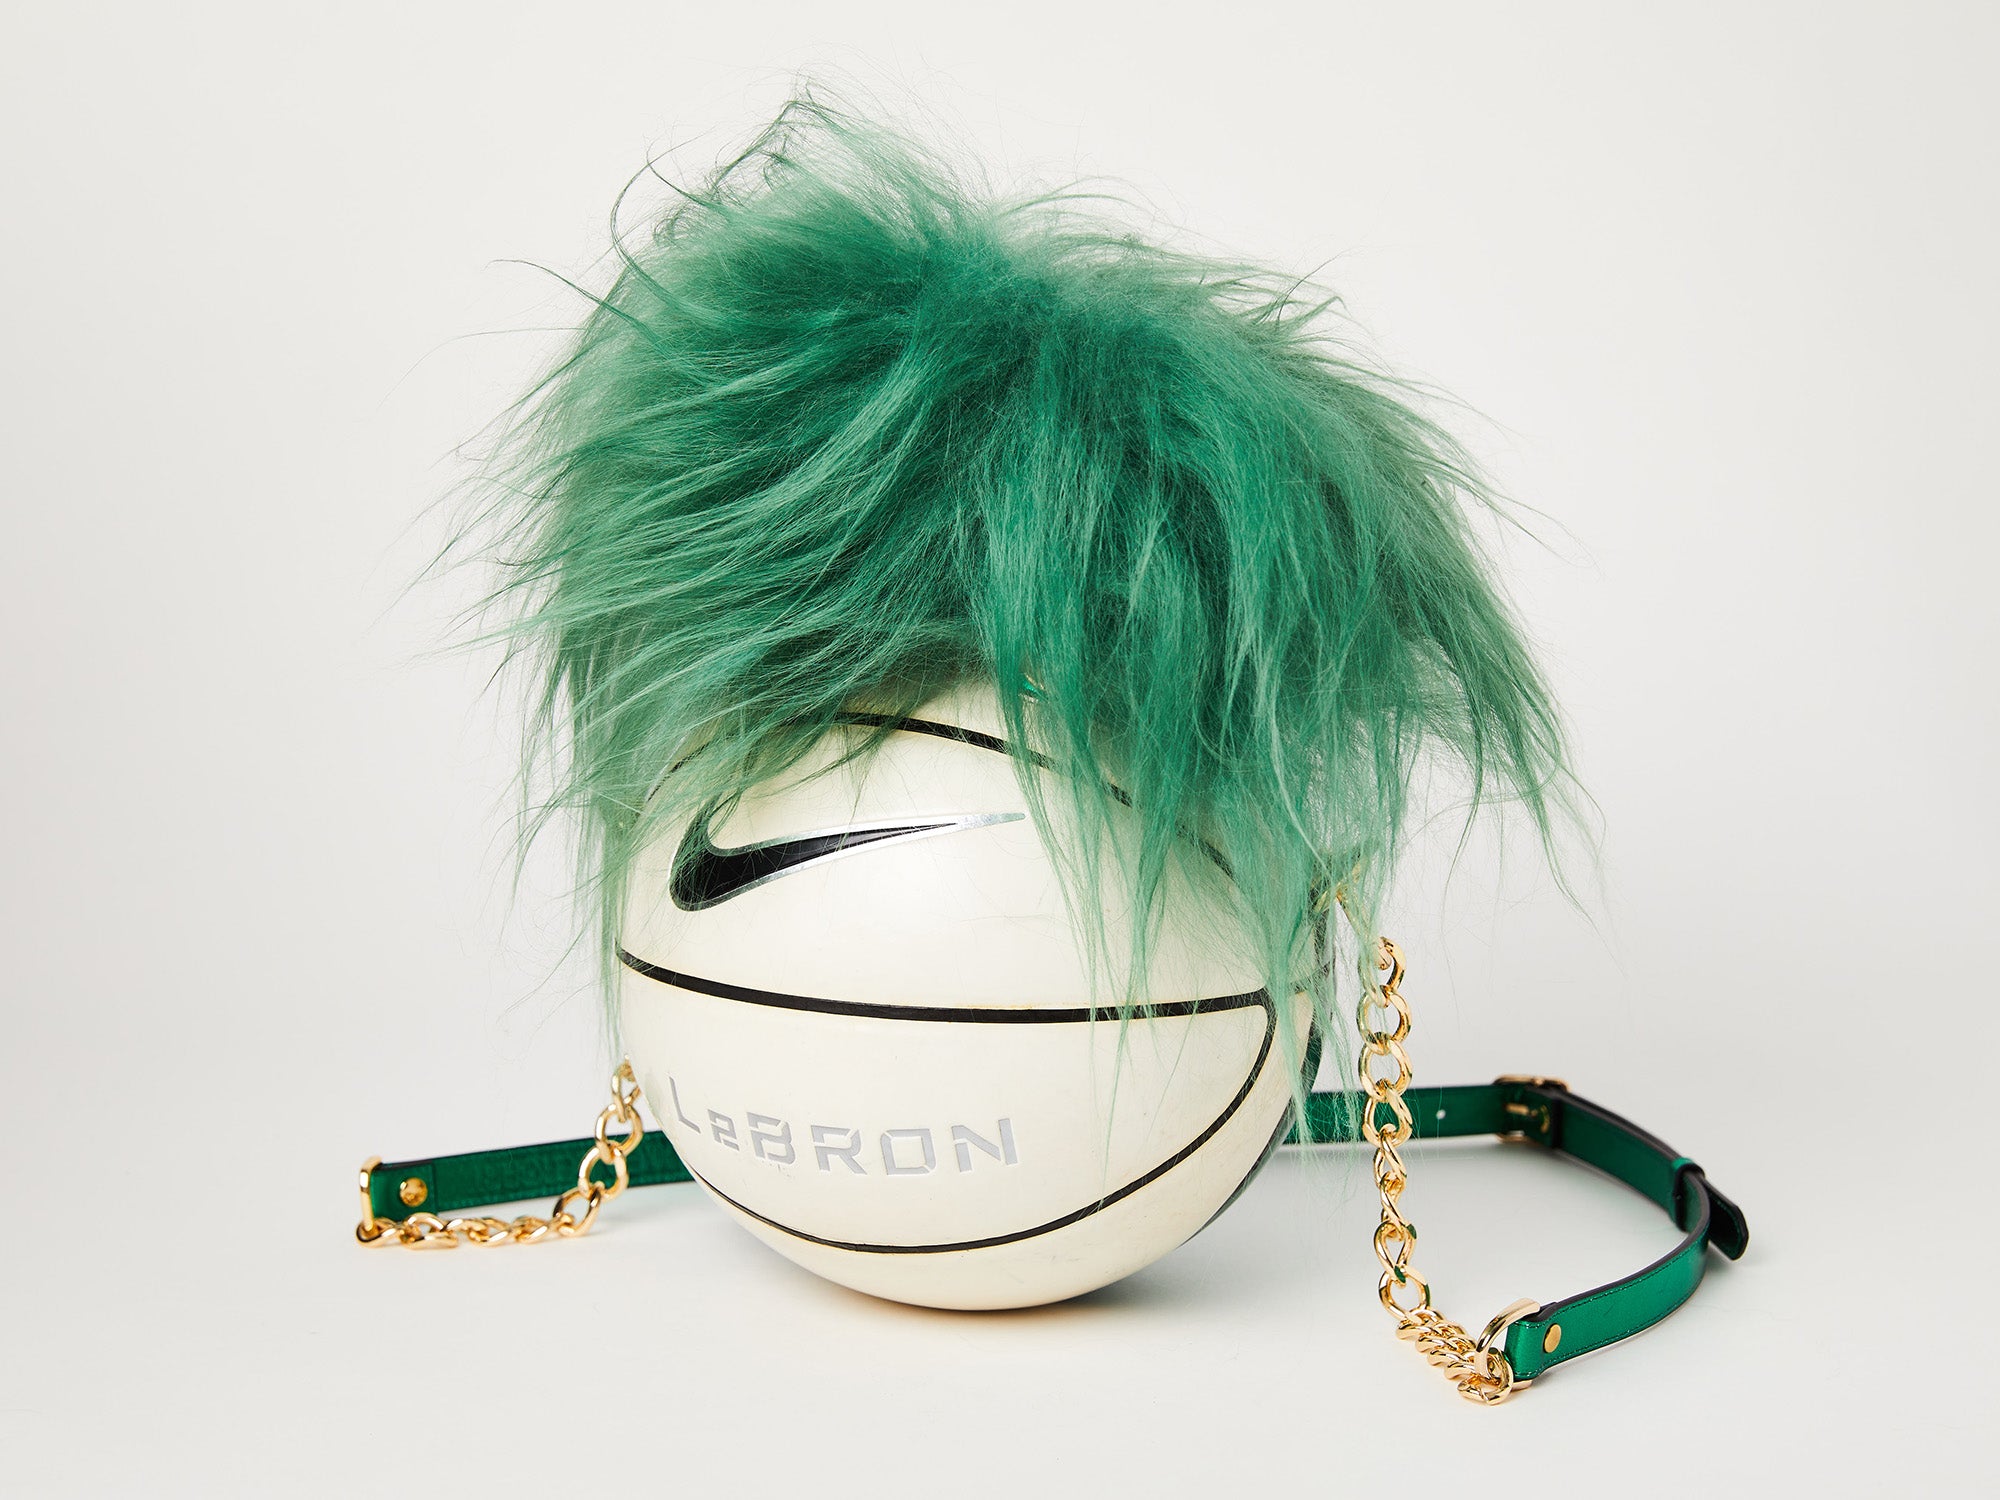 LeBron Vintage Nike Basketball Bag